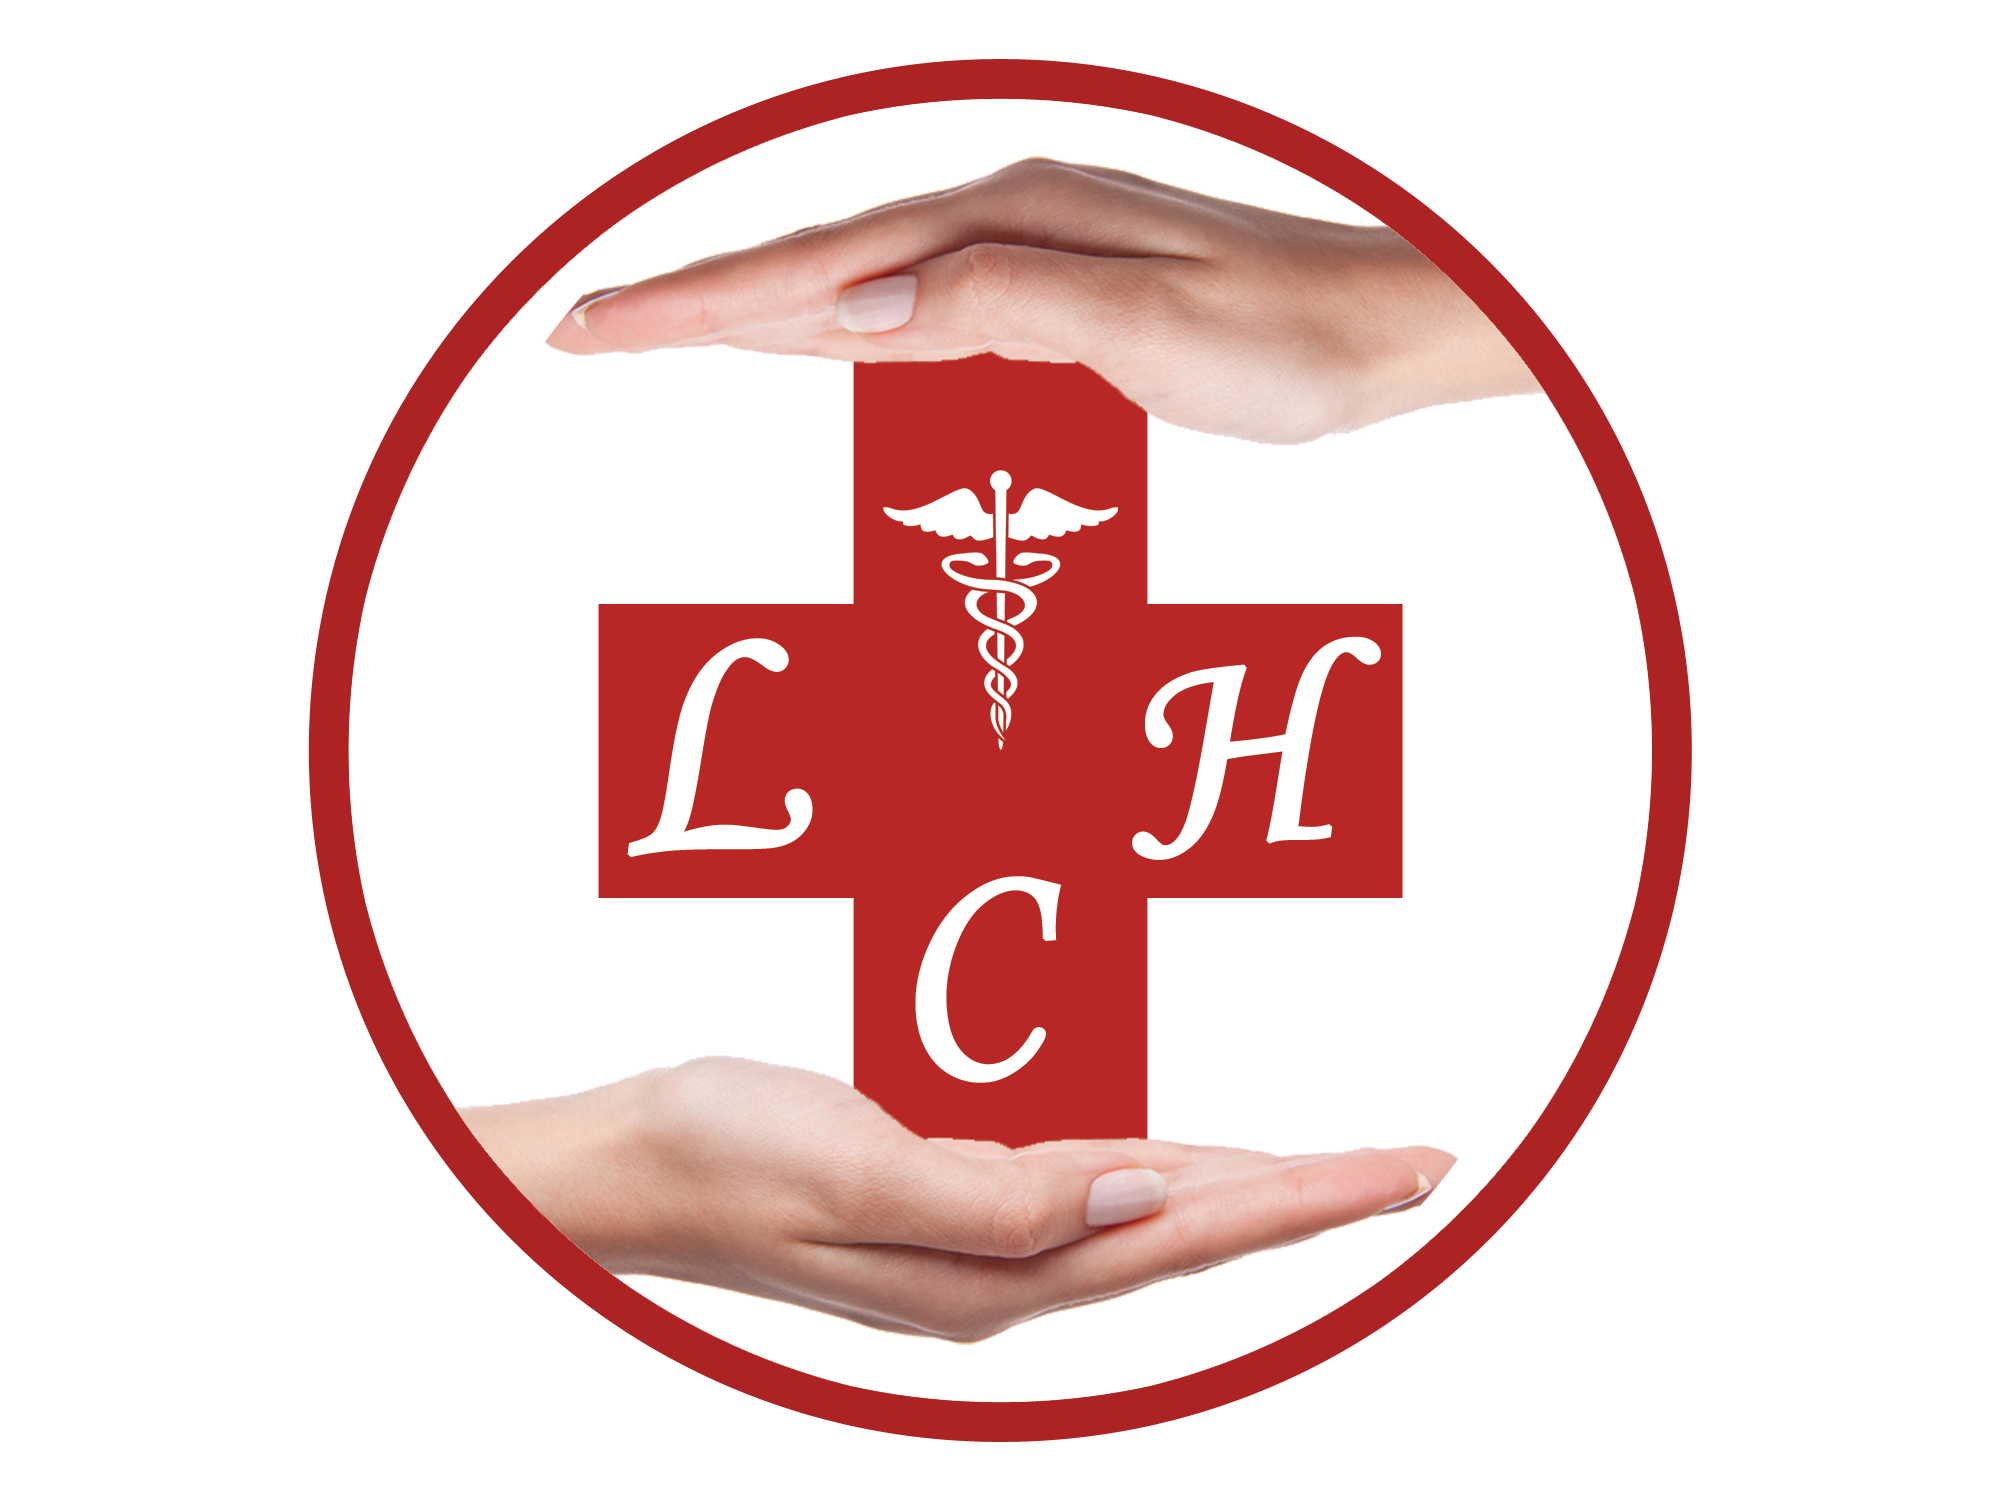 Life Care Hospital Logo